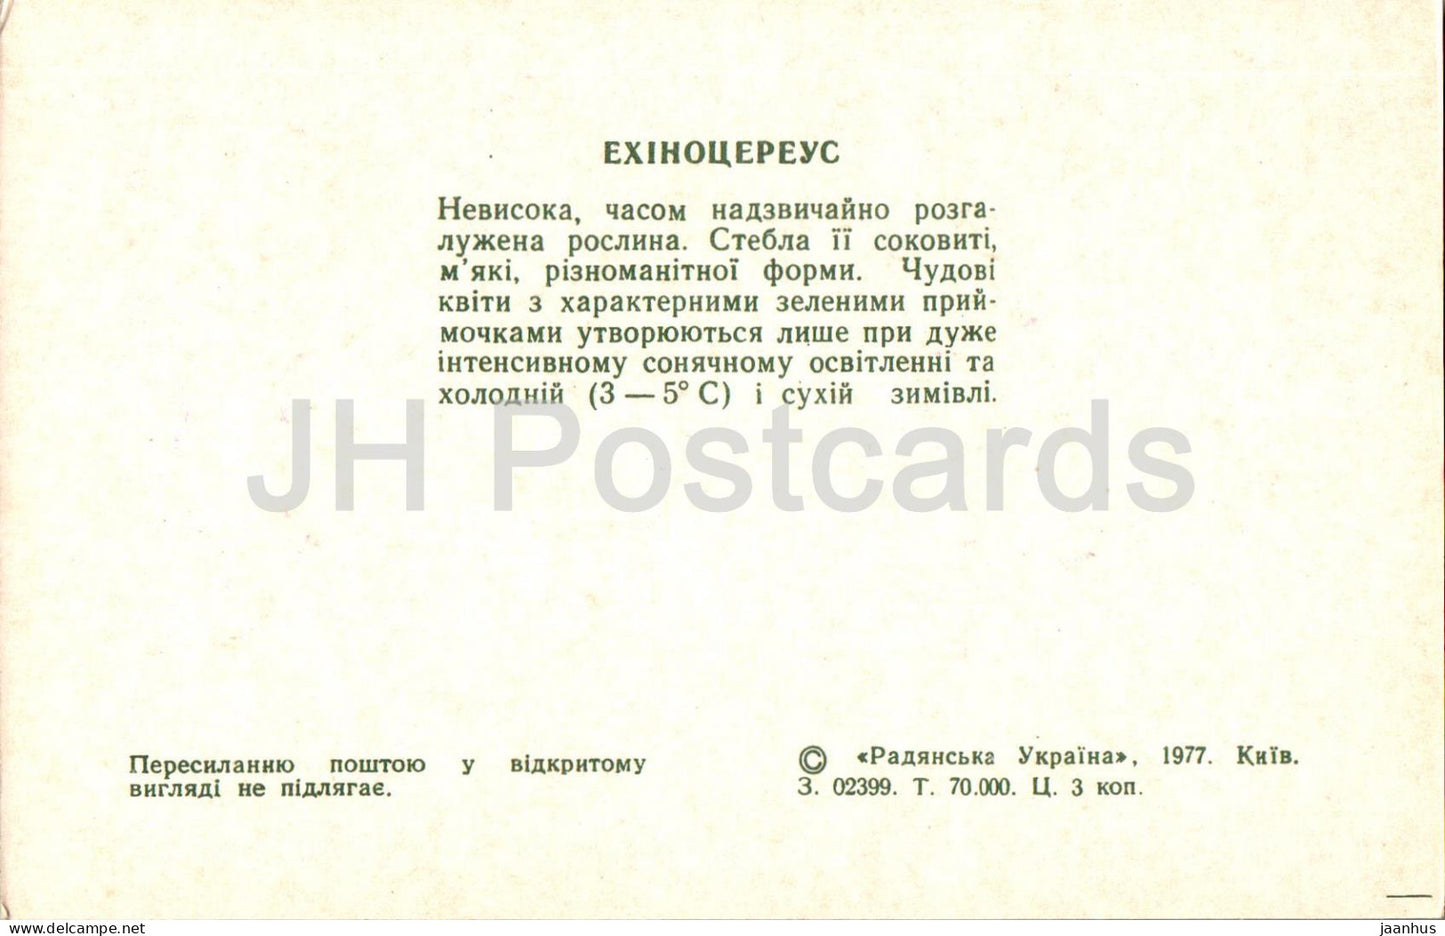 Echinocereus - cactus - cactus - fleurs - 1977 - Ukraine URSS - inutilisé 